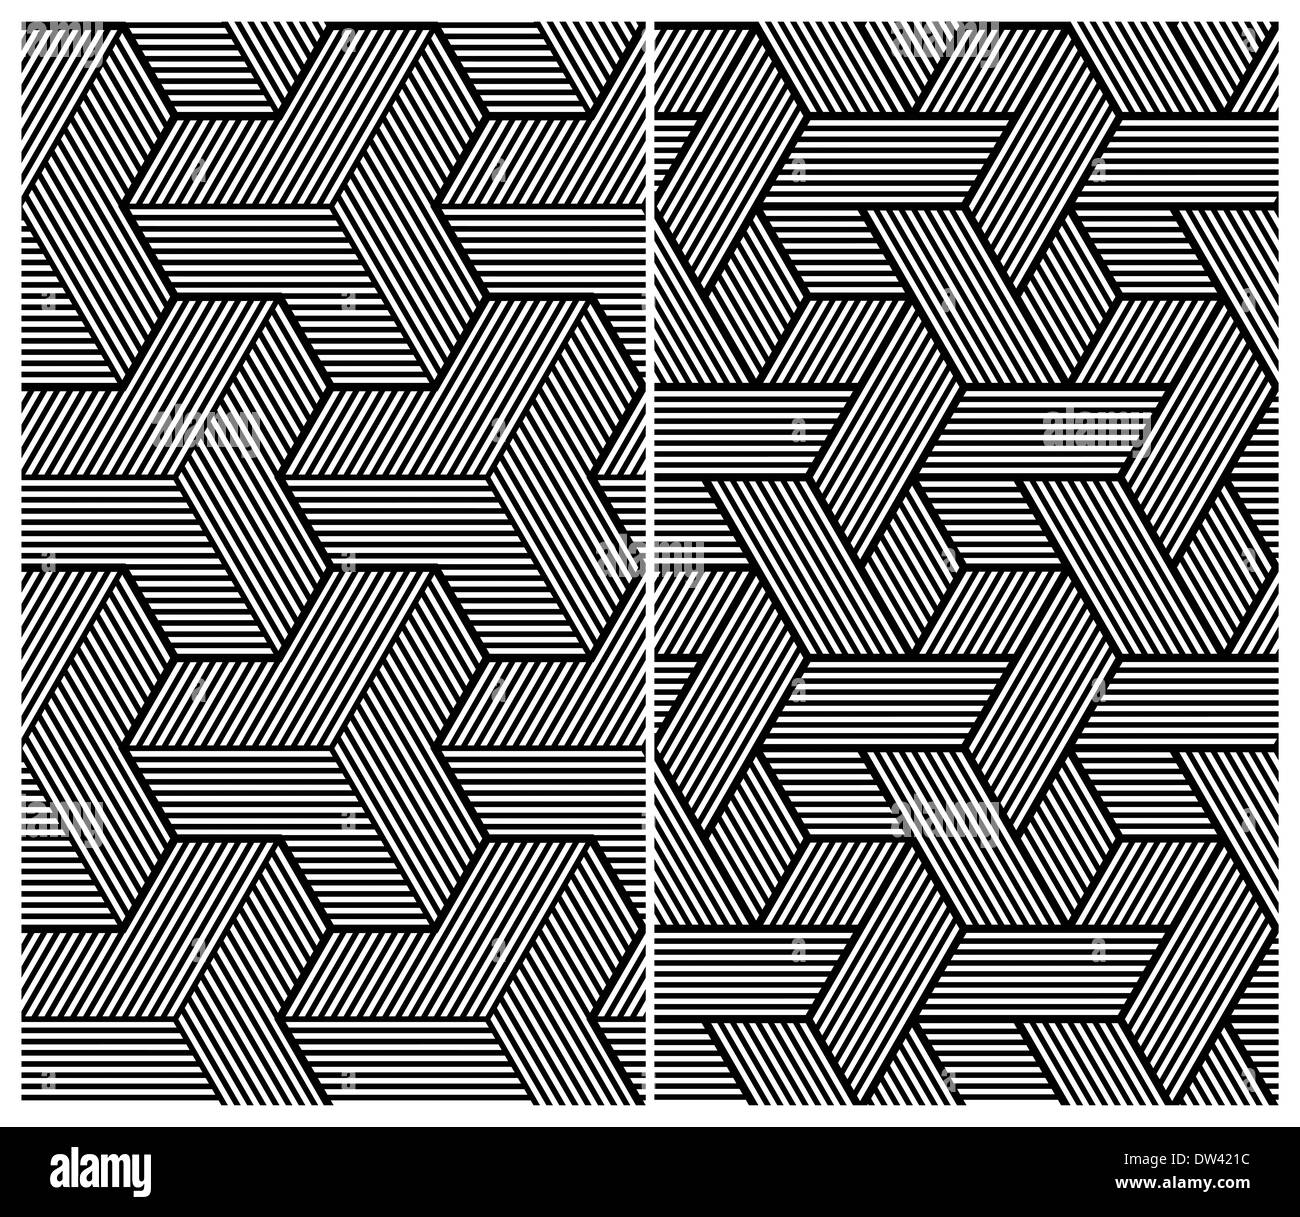 Set of Two B&W Seamless Patterns Stock Photo - Alamy